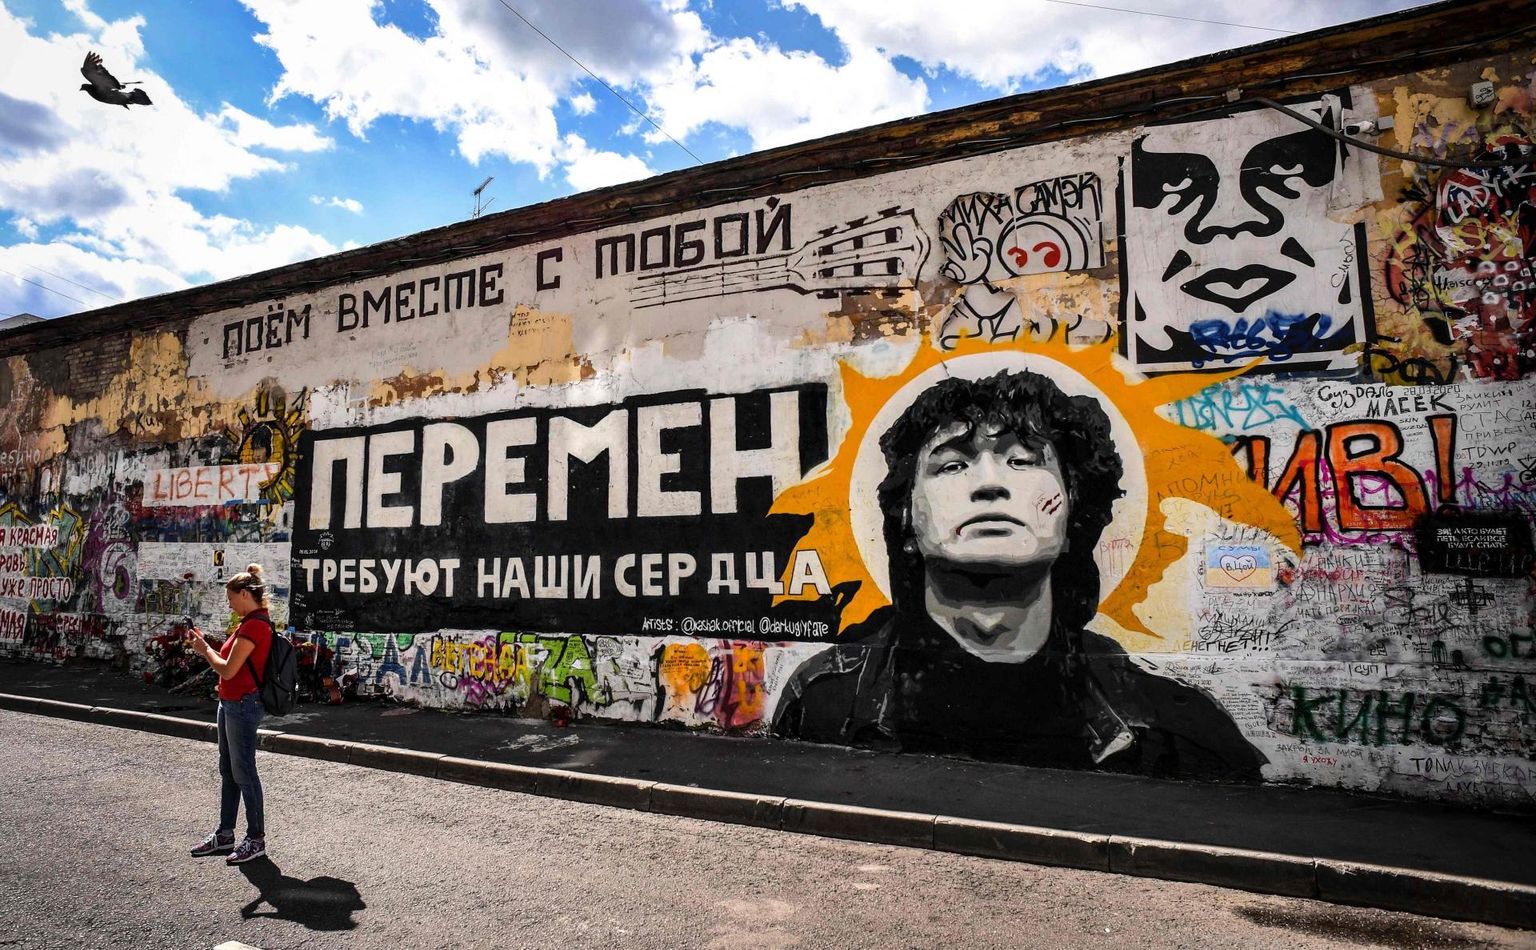 «Tsoi sein» Moskvas. Sein on püstitatud Viktor Tsoi mälestuseks ning tegemist on populaarse turismi­atraktsiooniga. Seinal on kirjas «Meie südamed nõuavad muutust!» laulust «Хочу перемен!», mis on üks populaarsemaid protestilaule.

 